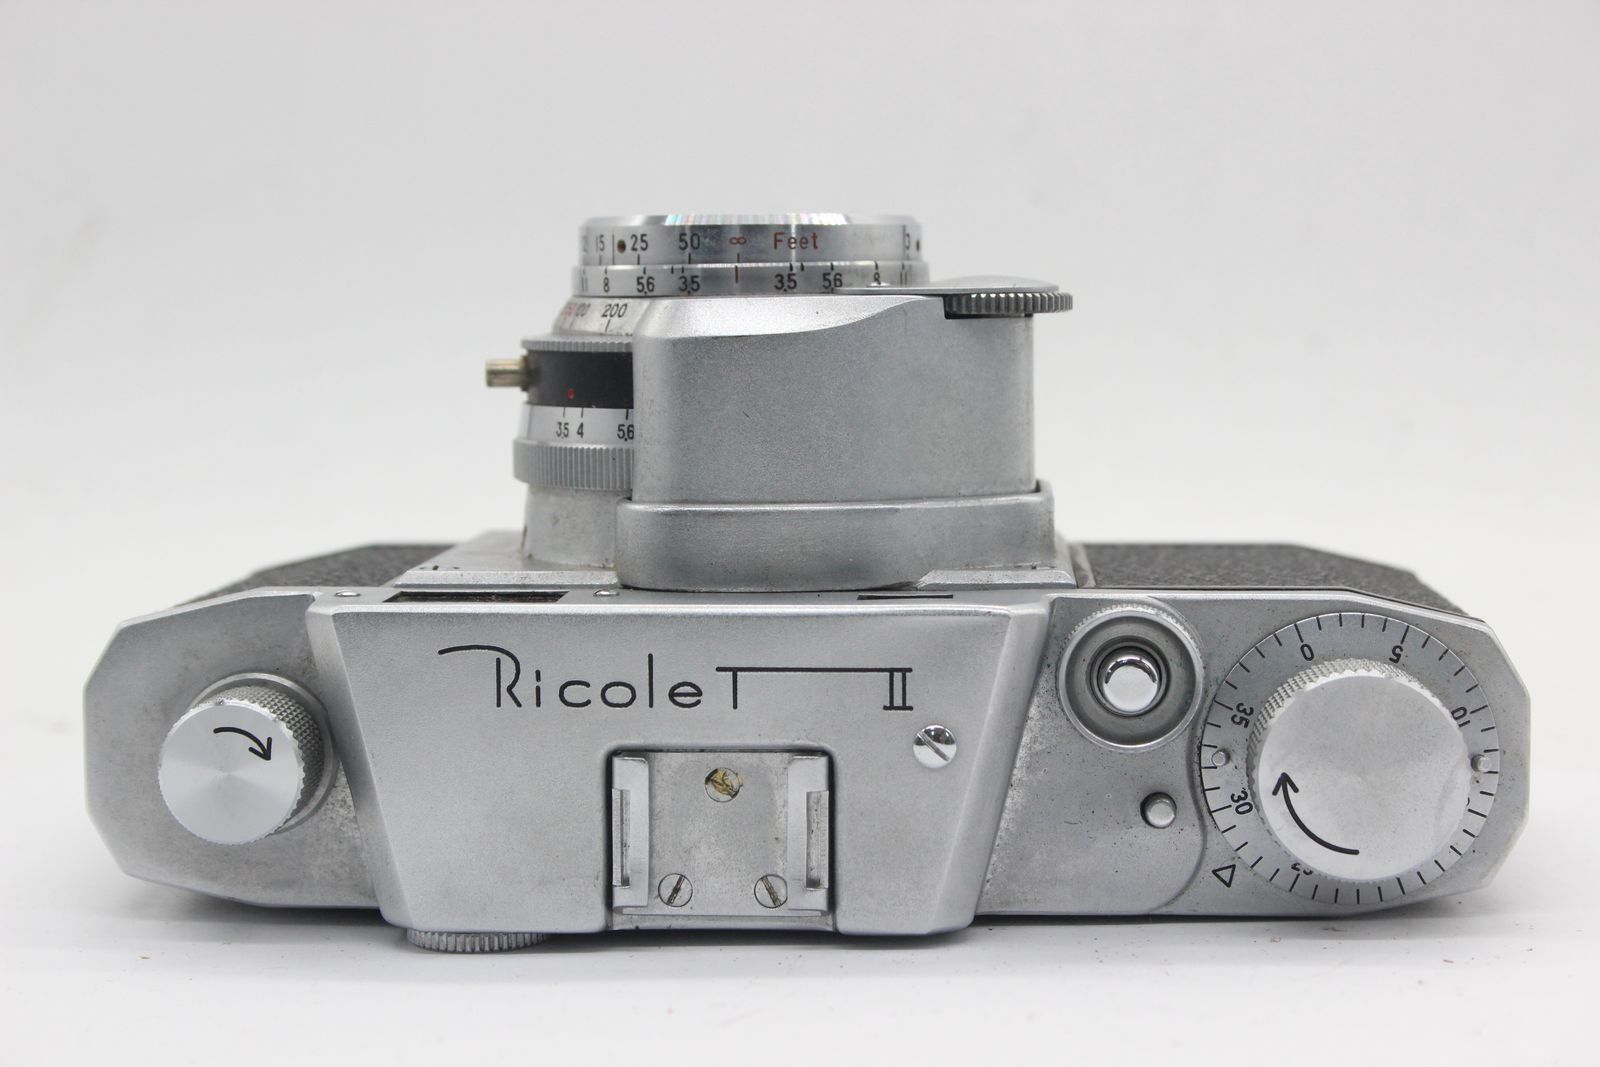 返品保証】 リコー Ricoh Ricolet II C. 45mm F3.5 ケース付き レンジ 